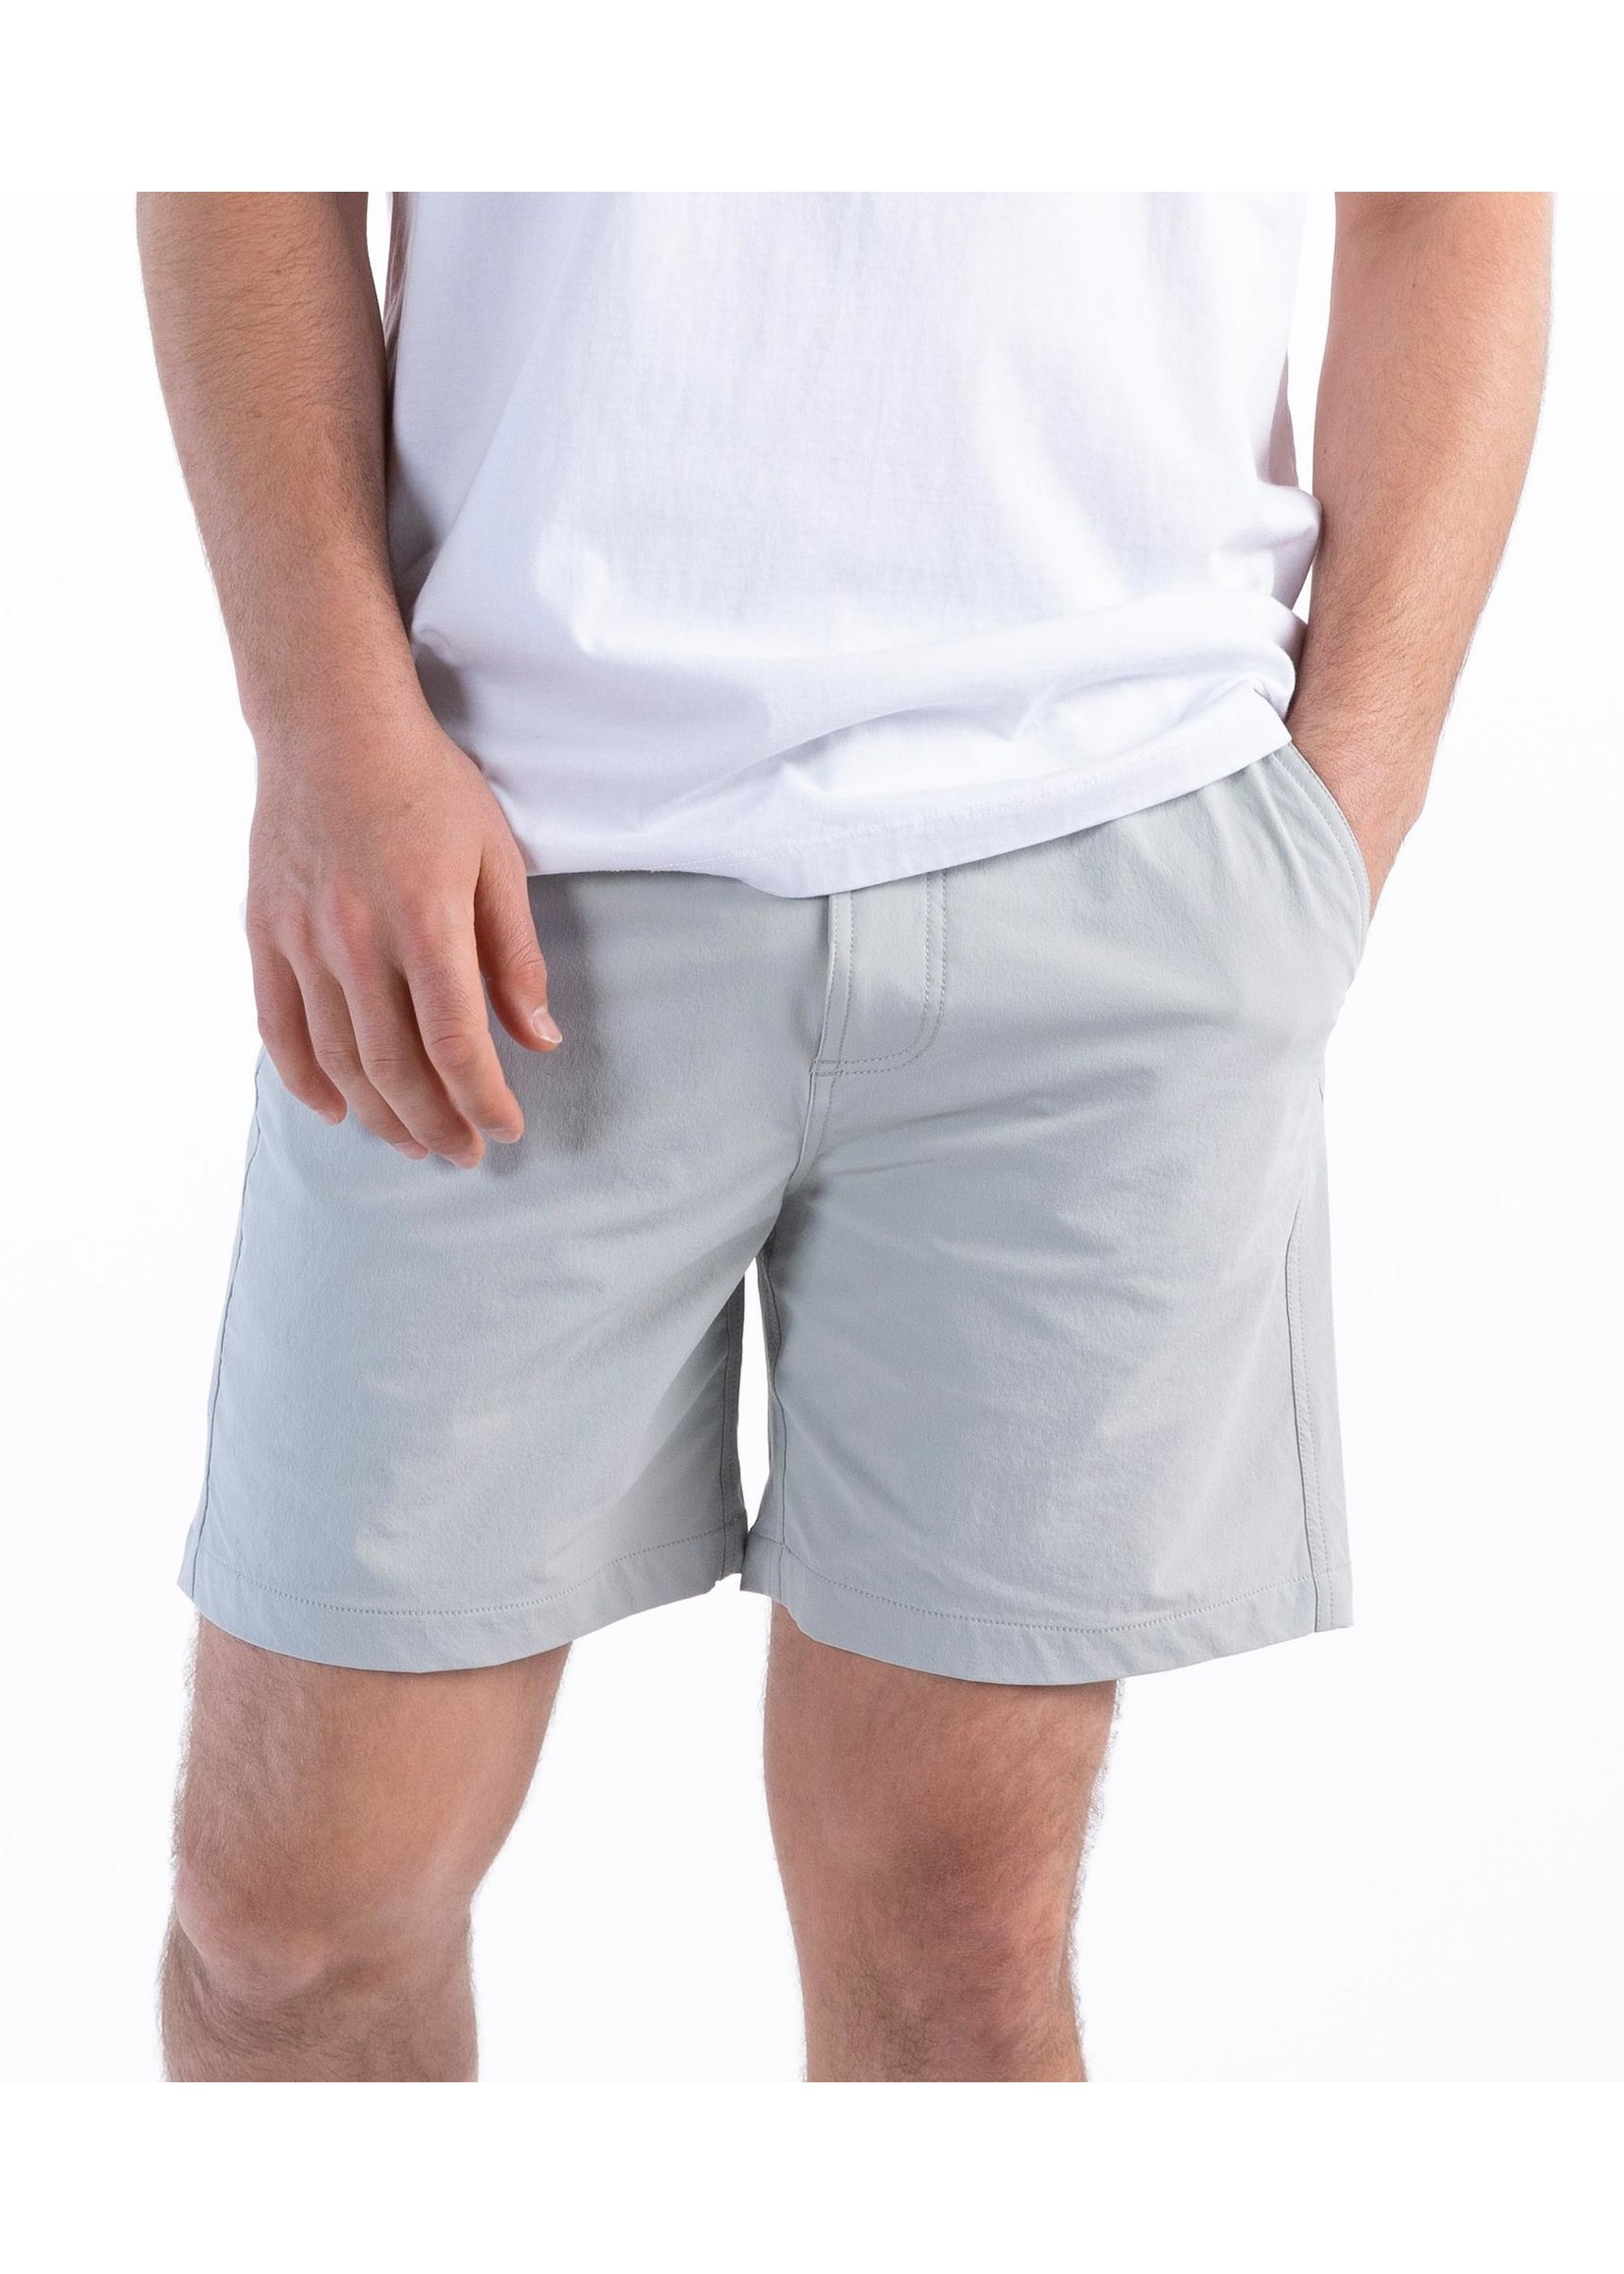 Southern Shirt Nomad Shorts